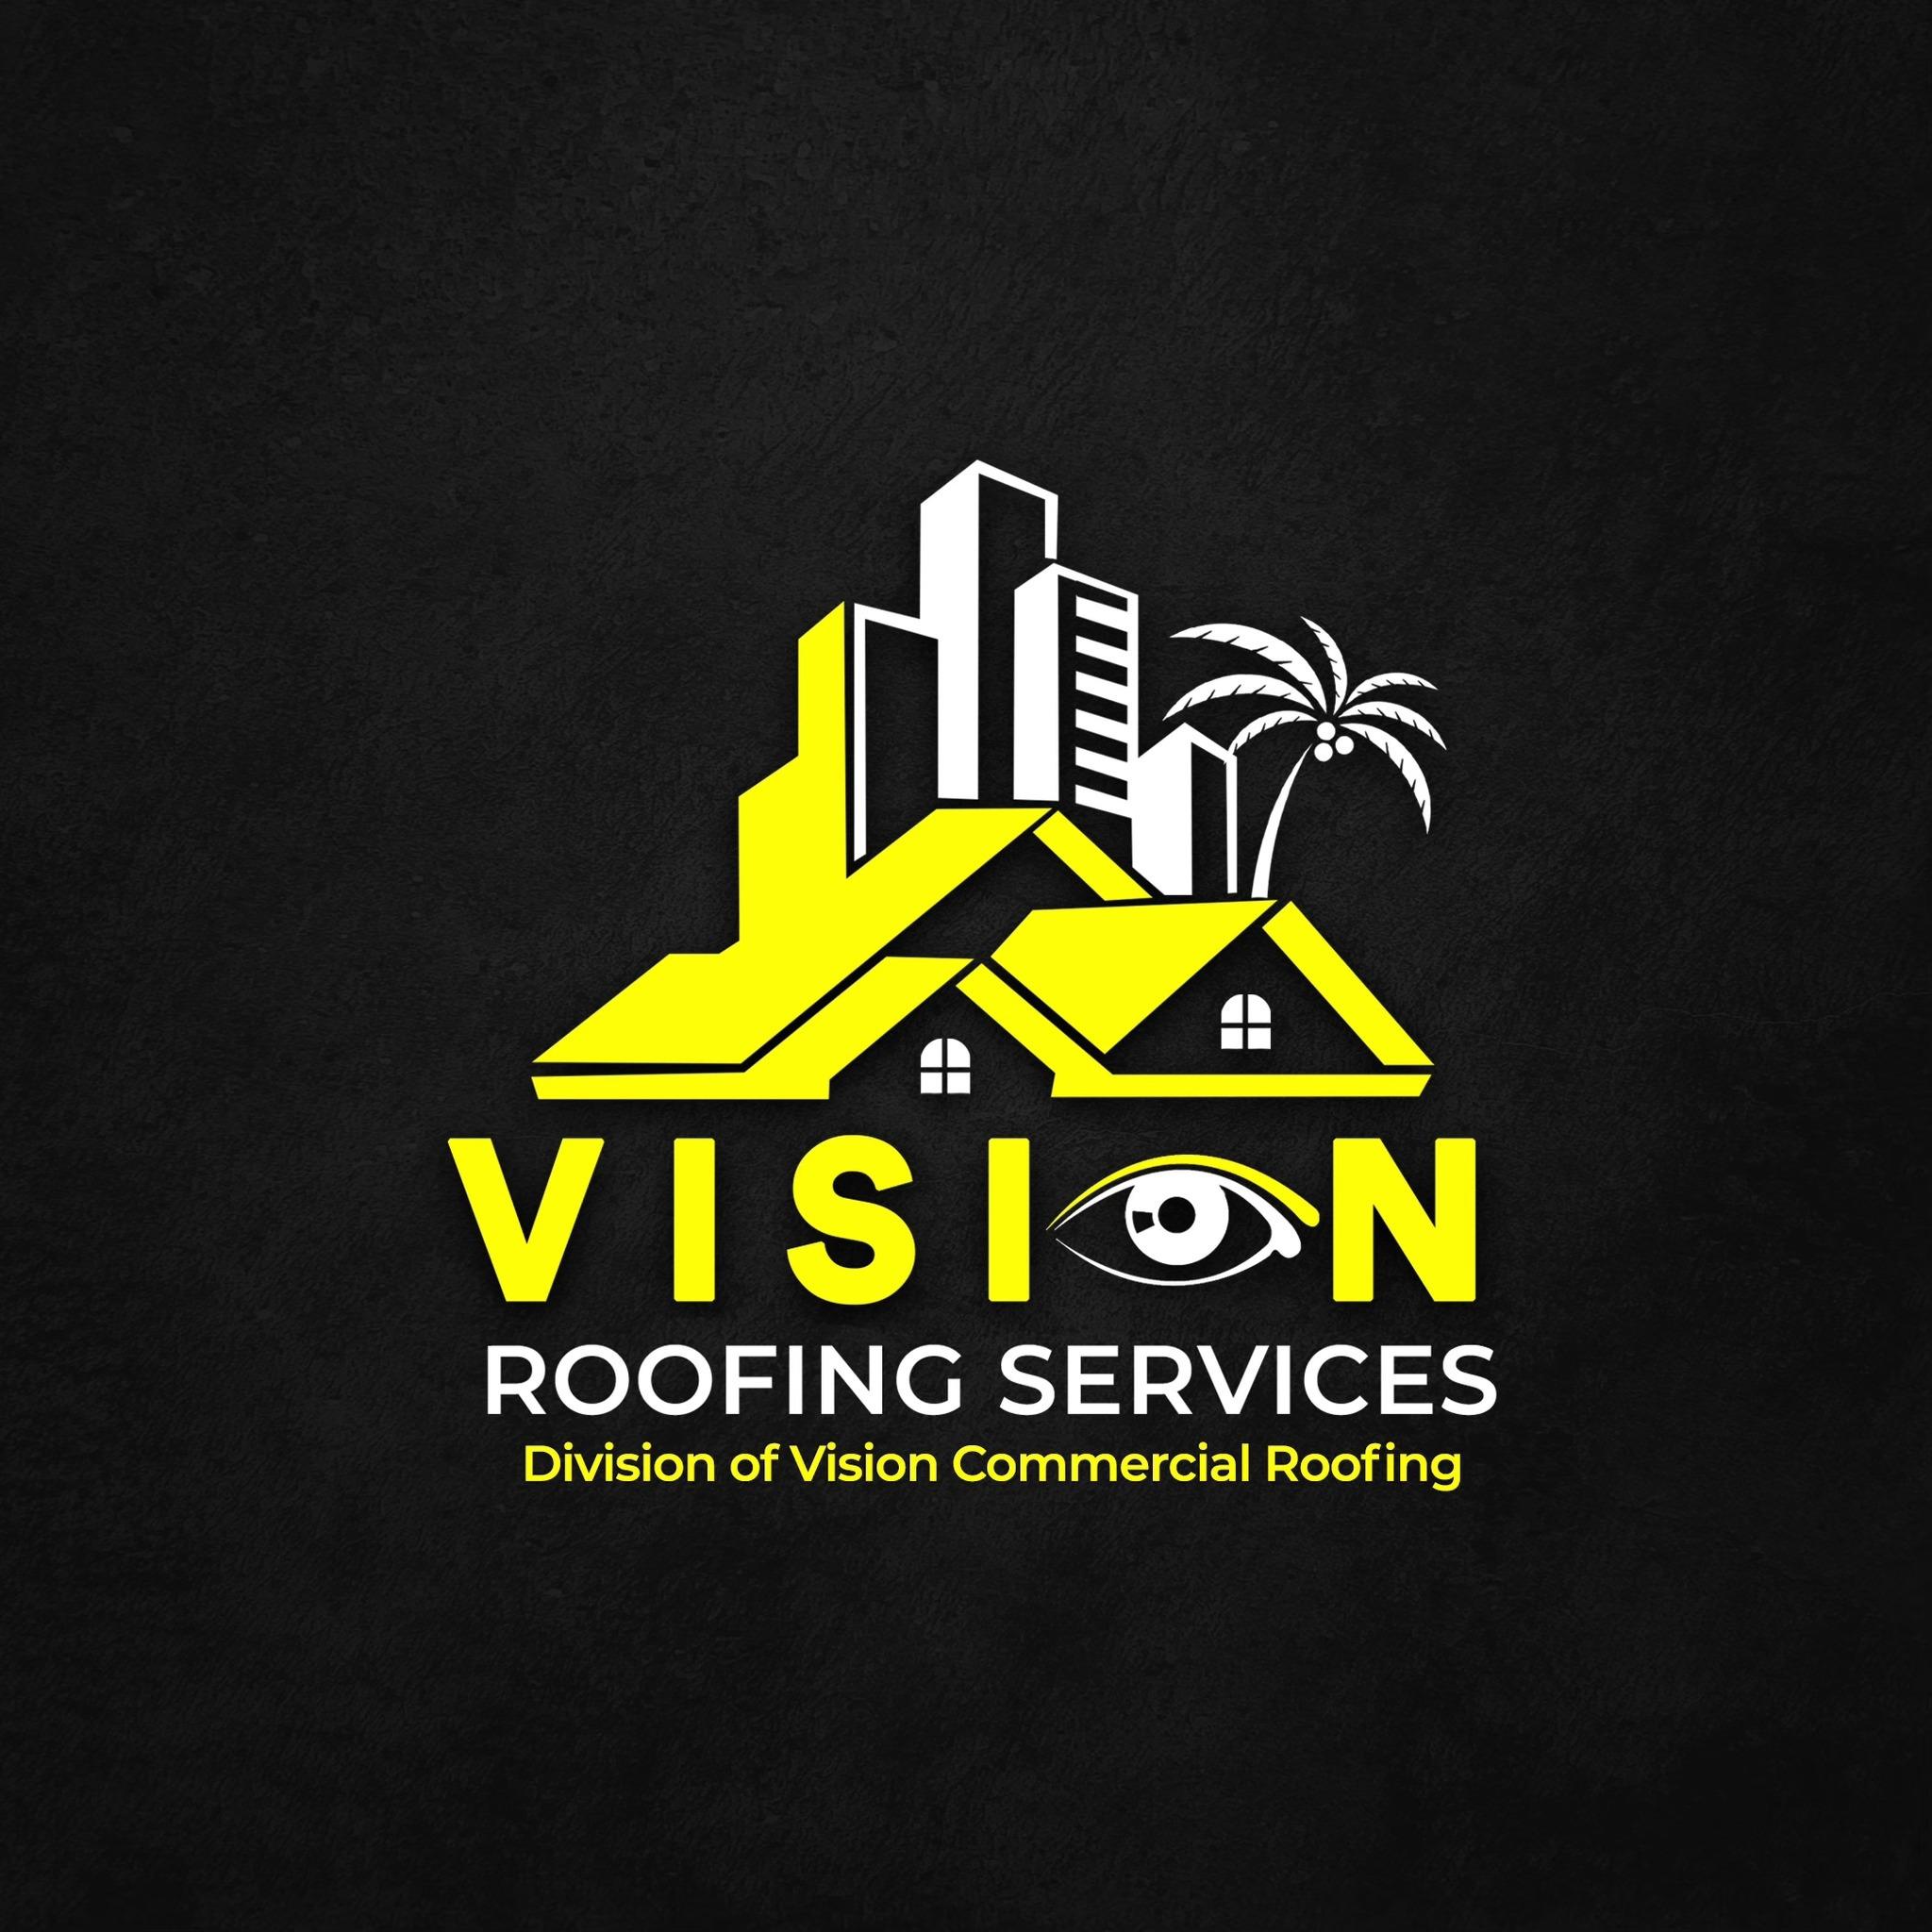 Vision Commercial Roofing LLC - Jupiter, FL - (561)232-6479 | ShowMeLocal.com